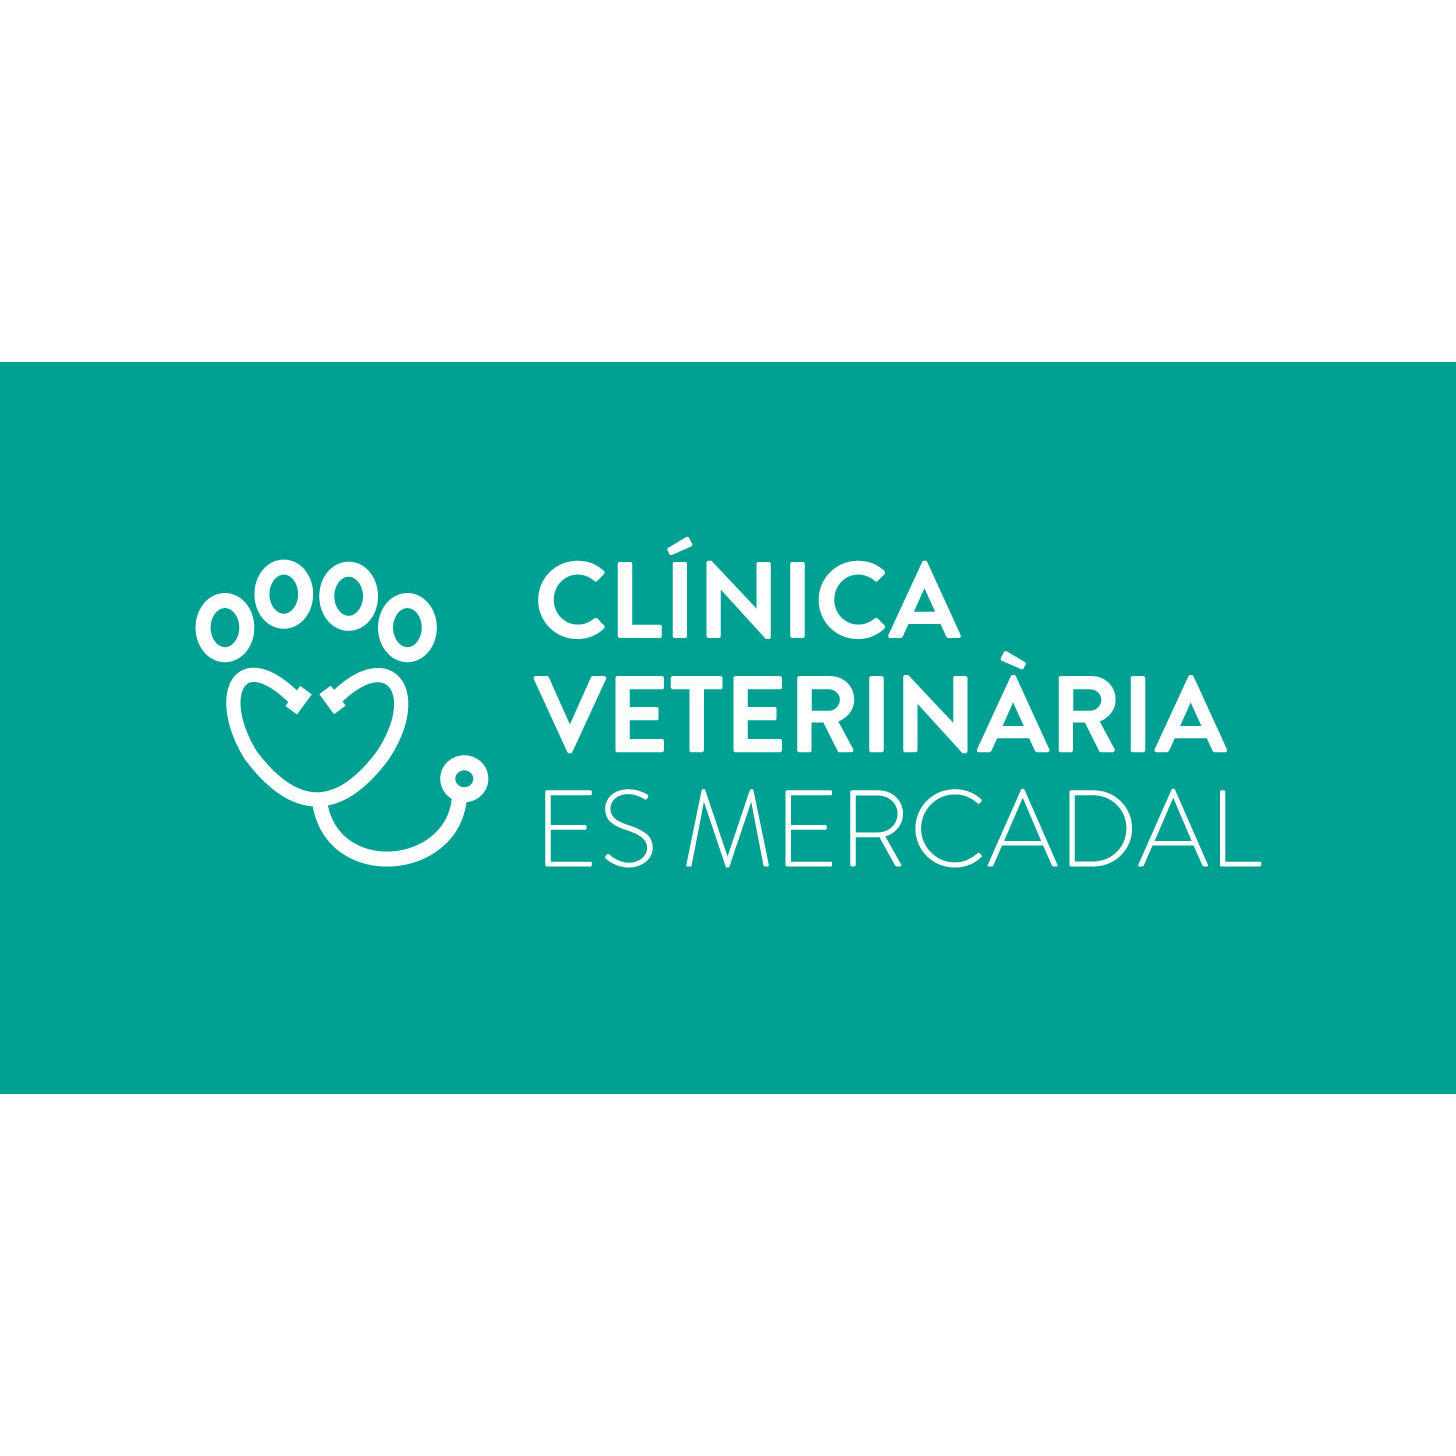 Clínica Veterinaria Es Mercadal Logo